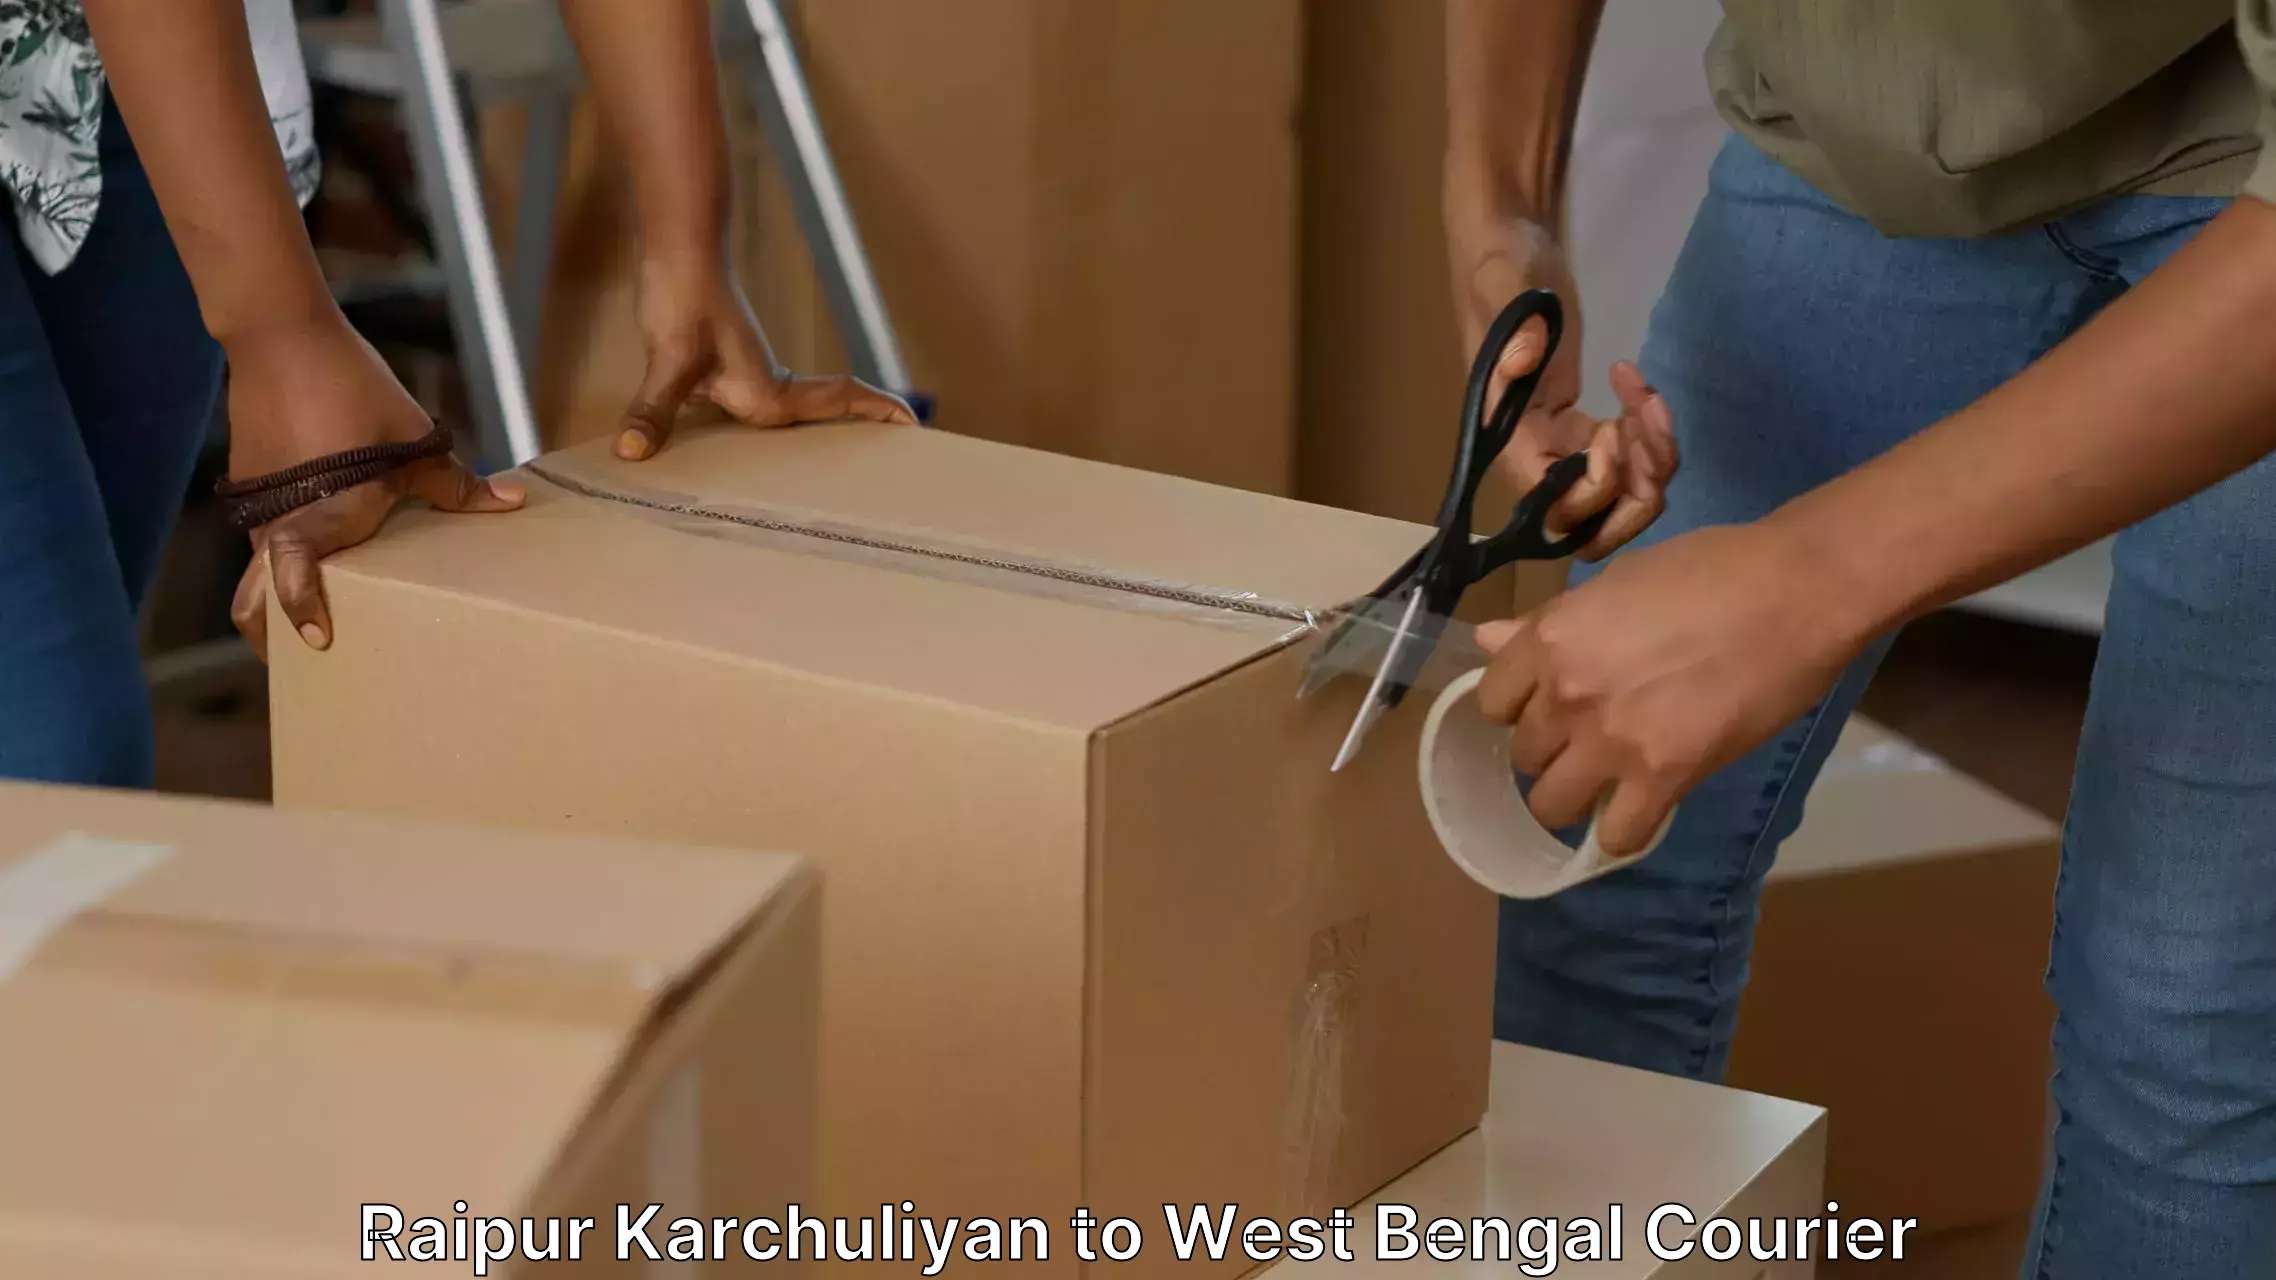 Furniture moving and handling Raipur Karchuliyan to Baneswar